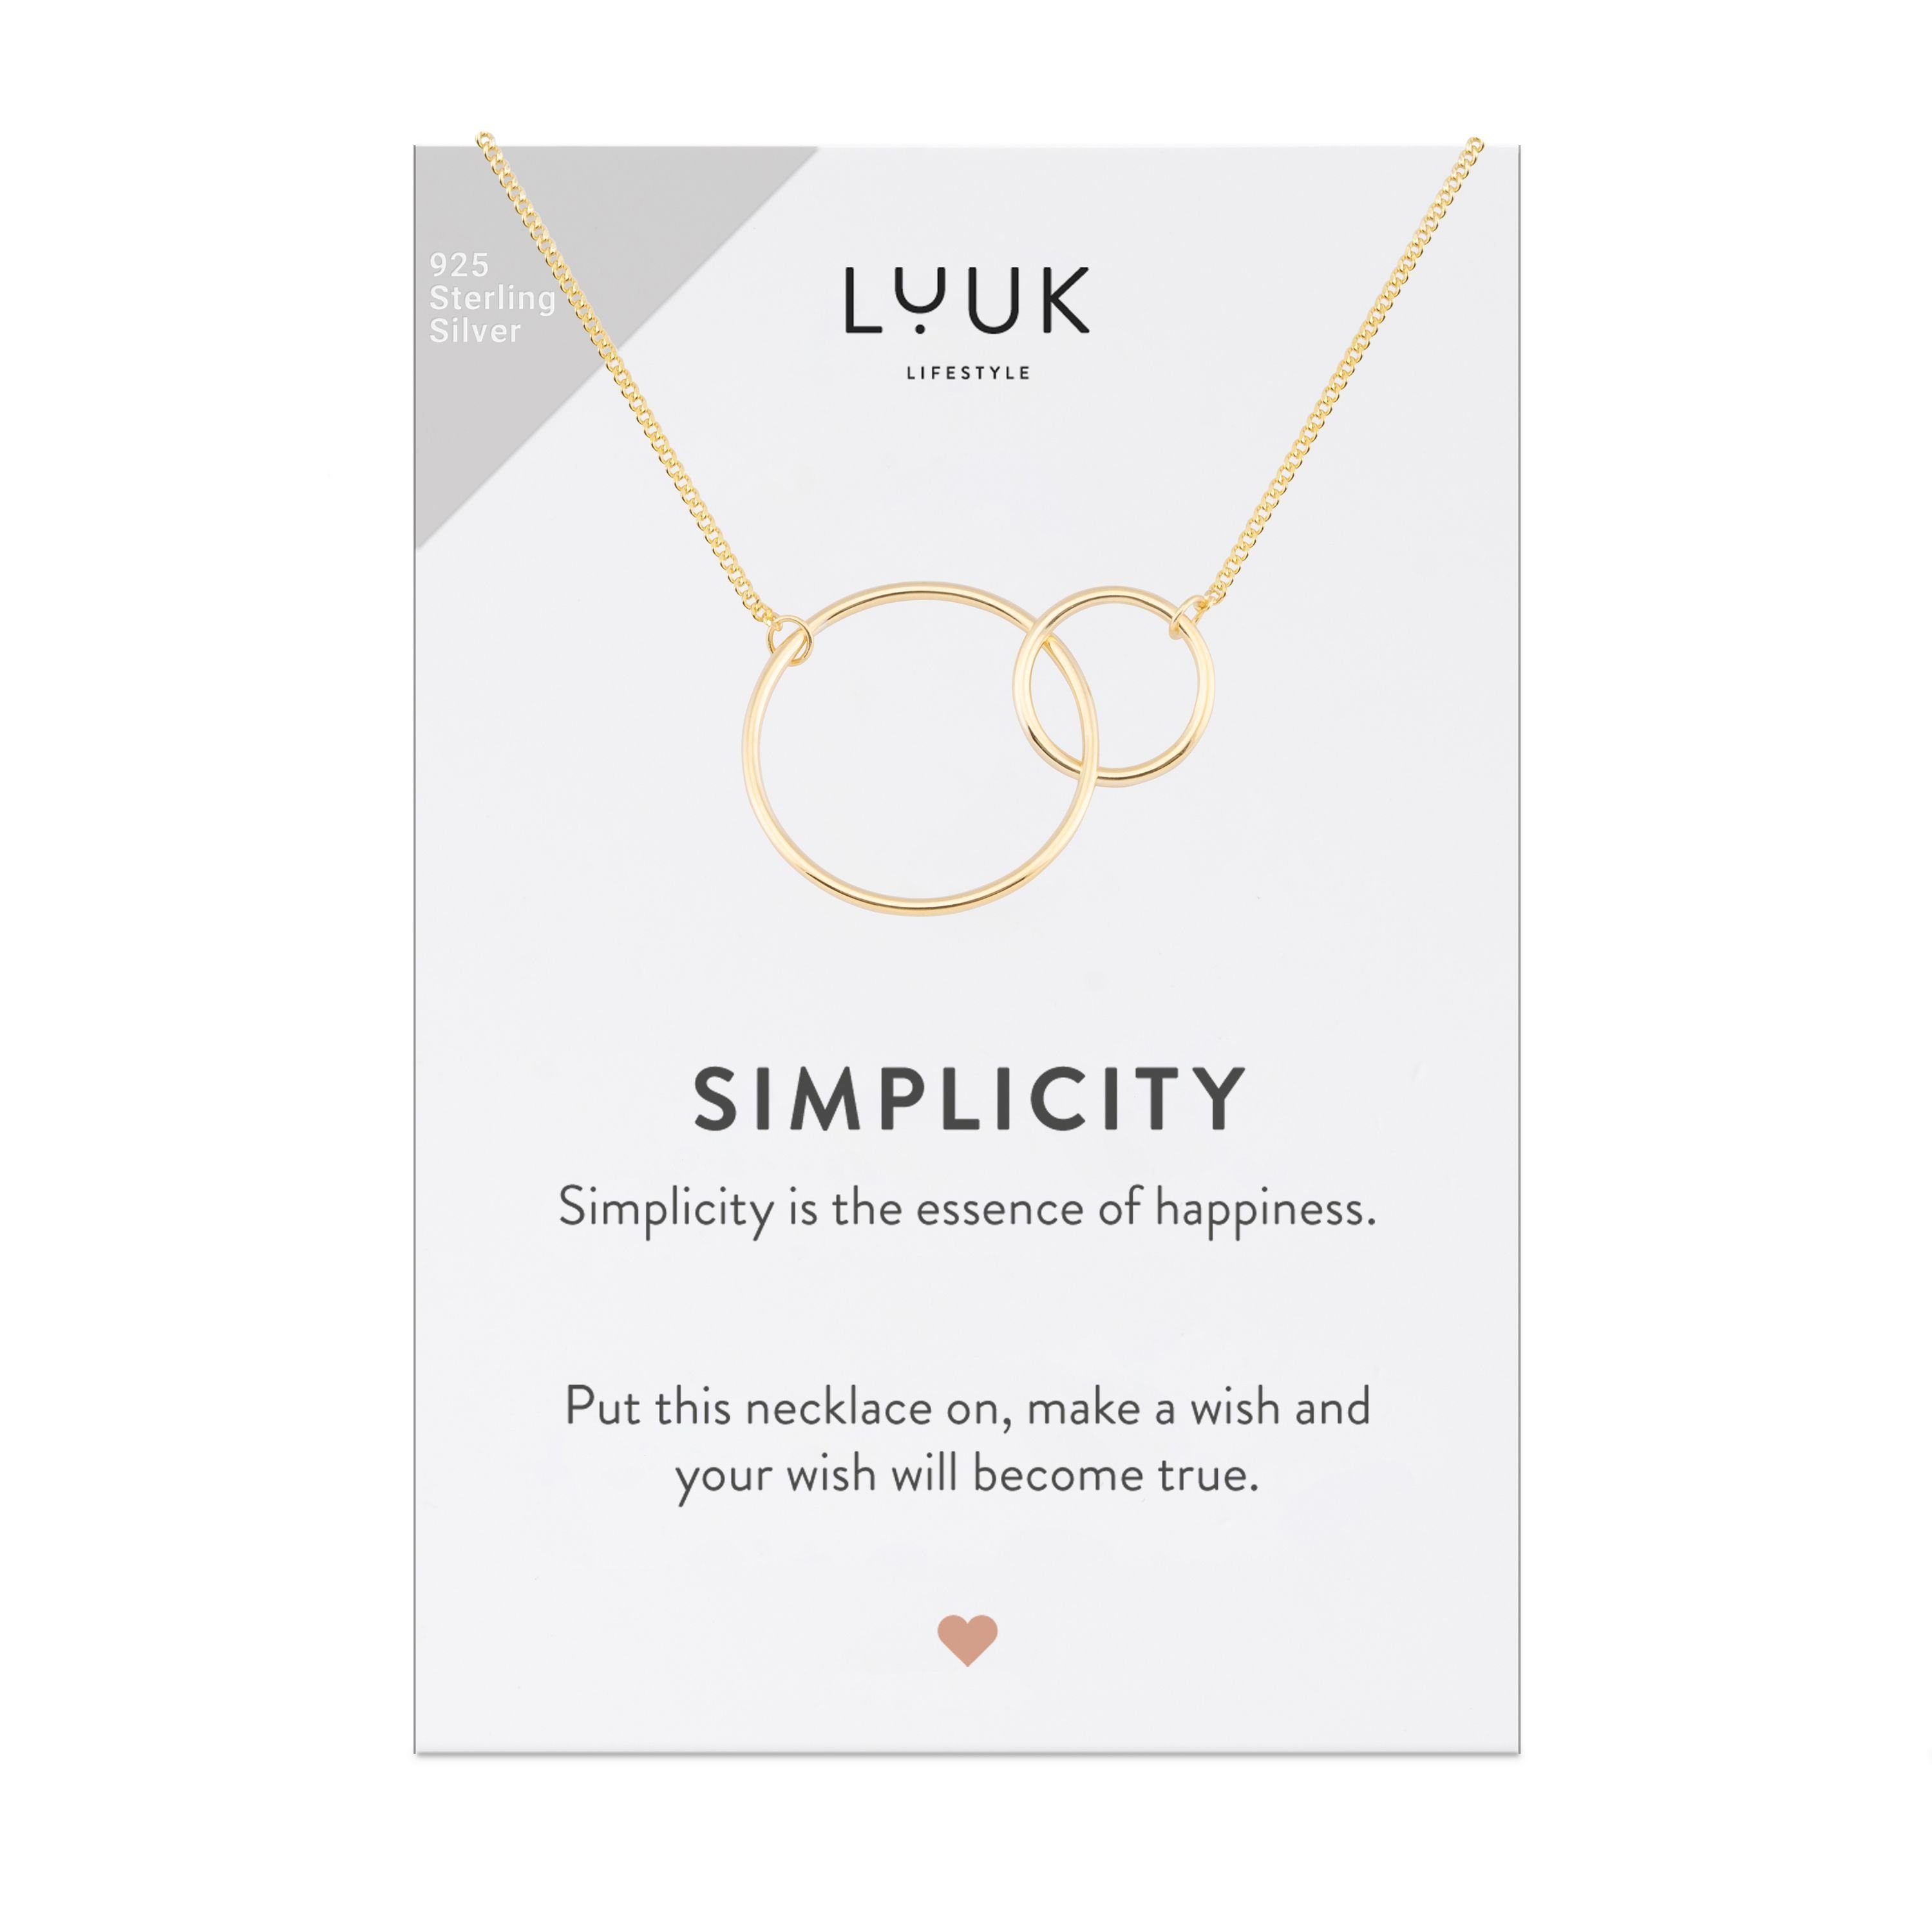 verschlungenen mit und Gold Ringen Geschenkkarte SIMPLICITY LUUK Kreise, Silberkette LIFESTYLE